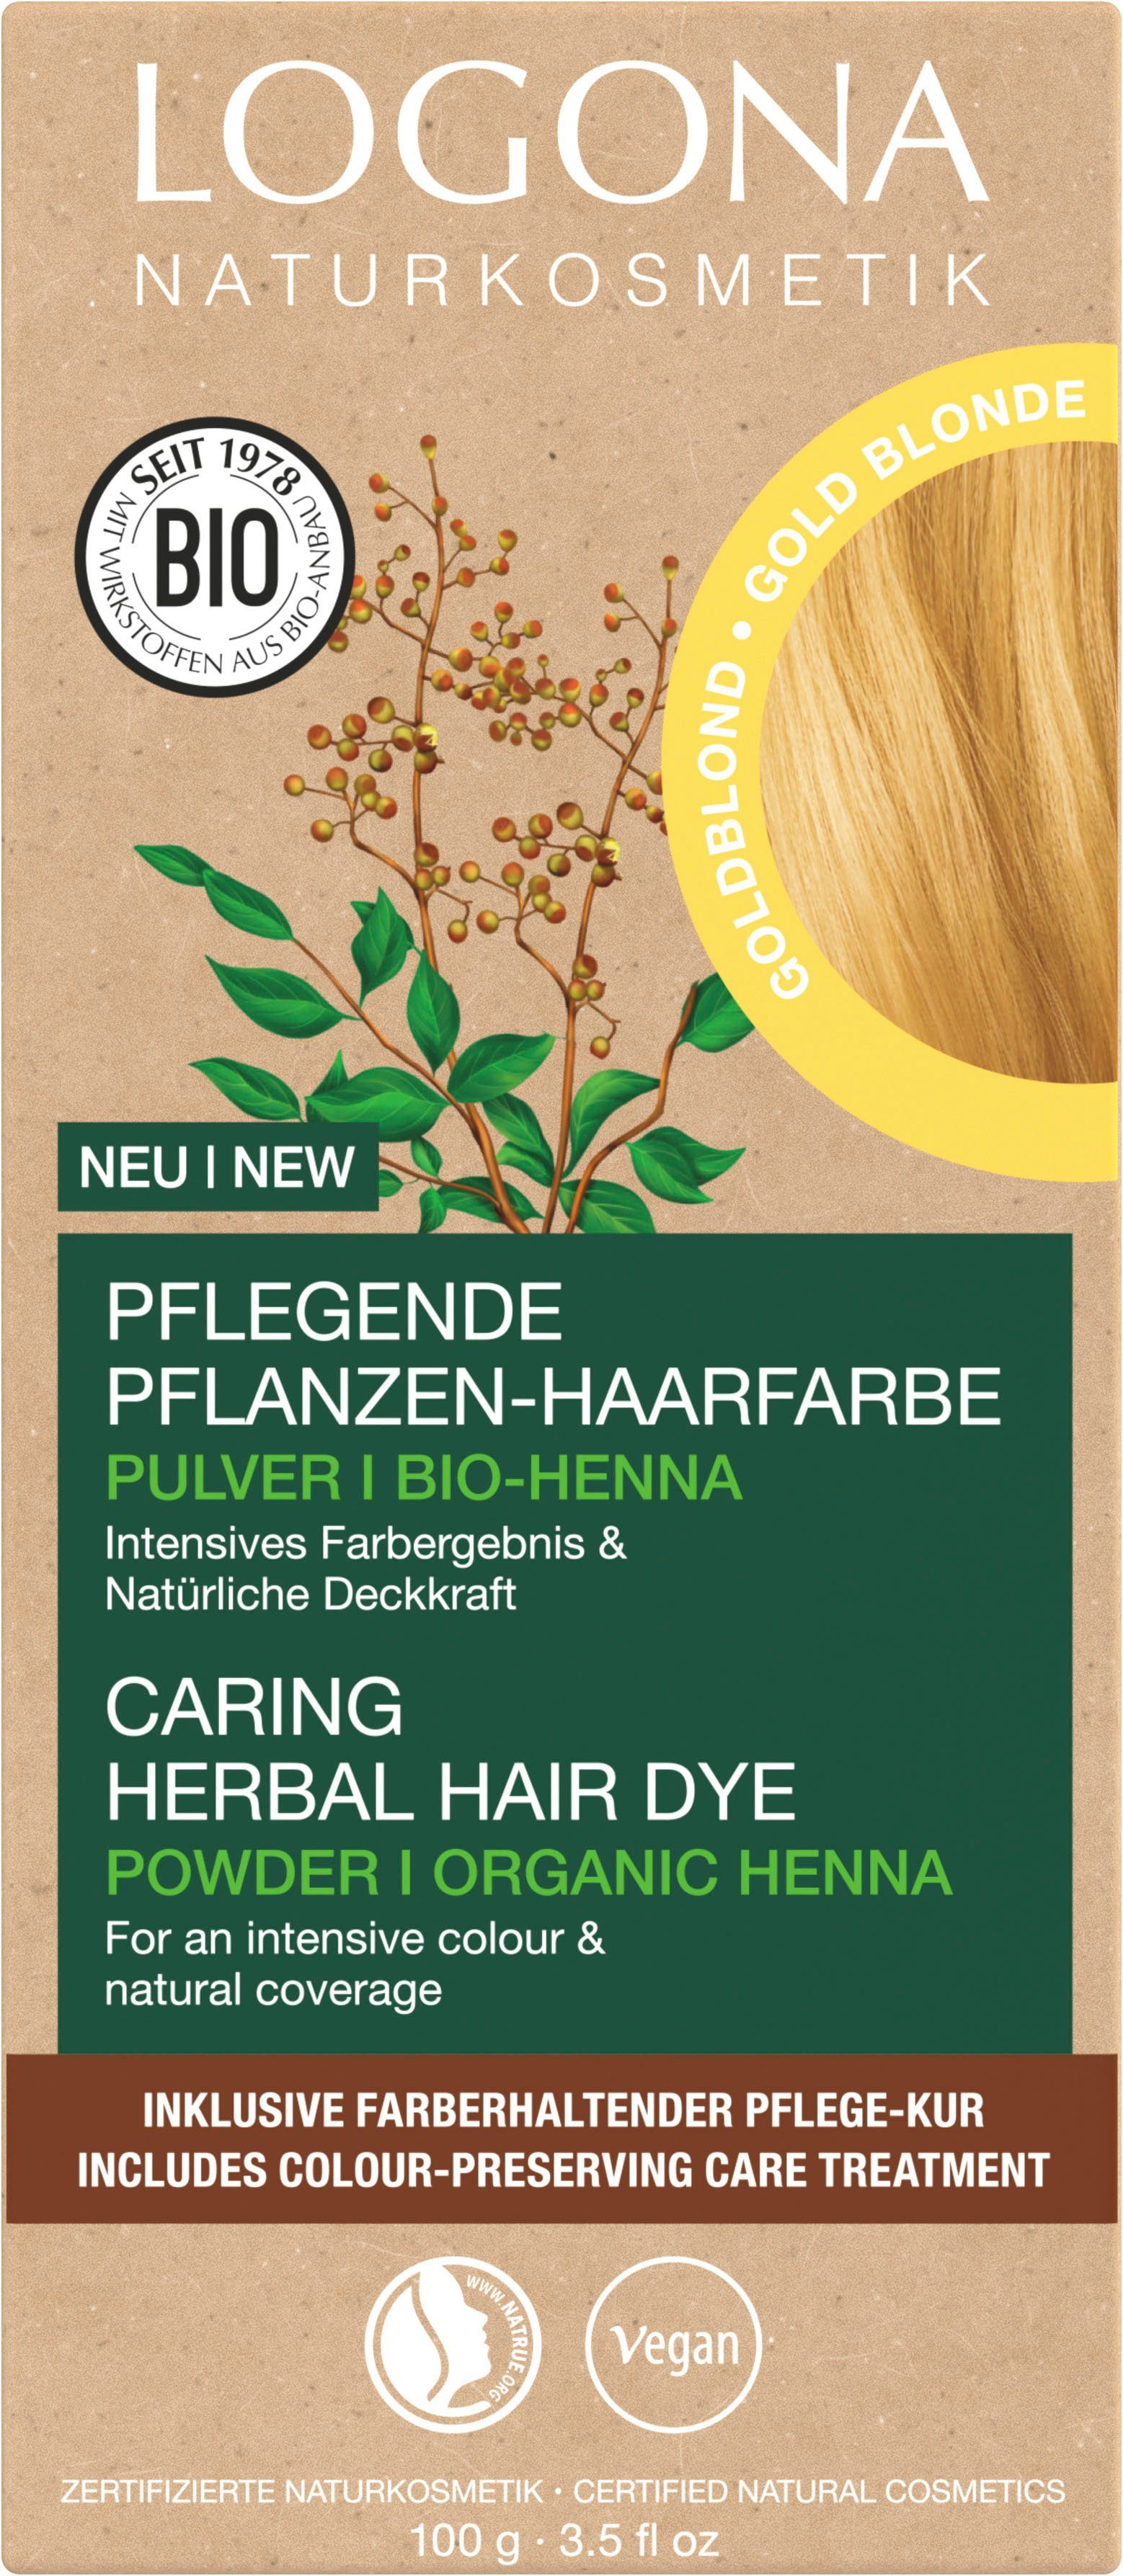 Goldblond Pulver 01 Haarfarbe Pflanzen-Haarfarbe LOGONA